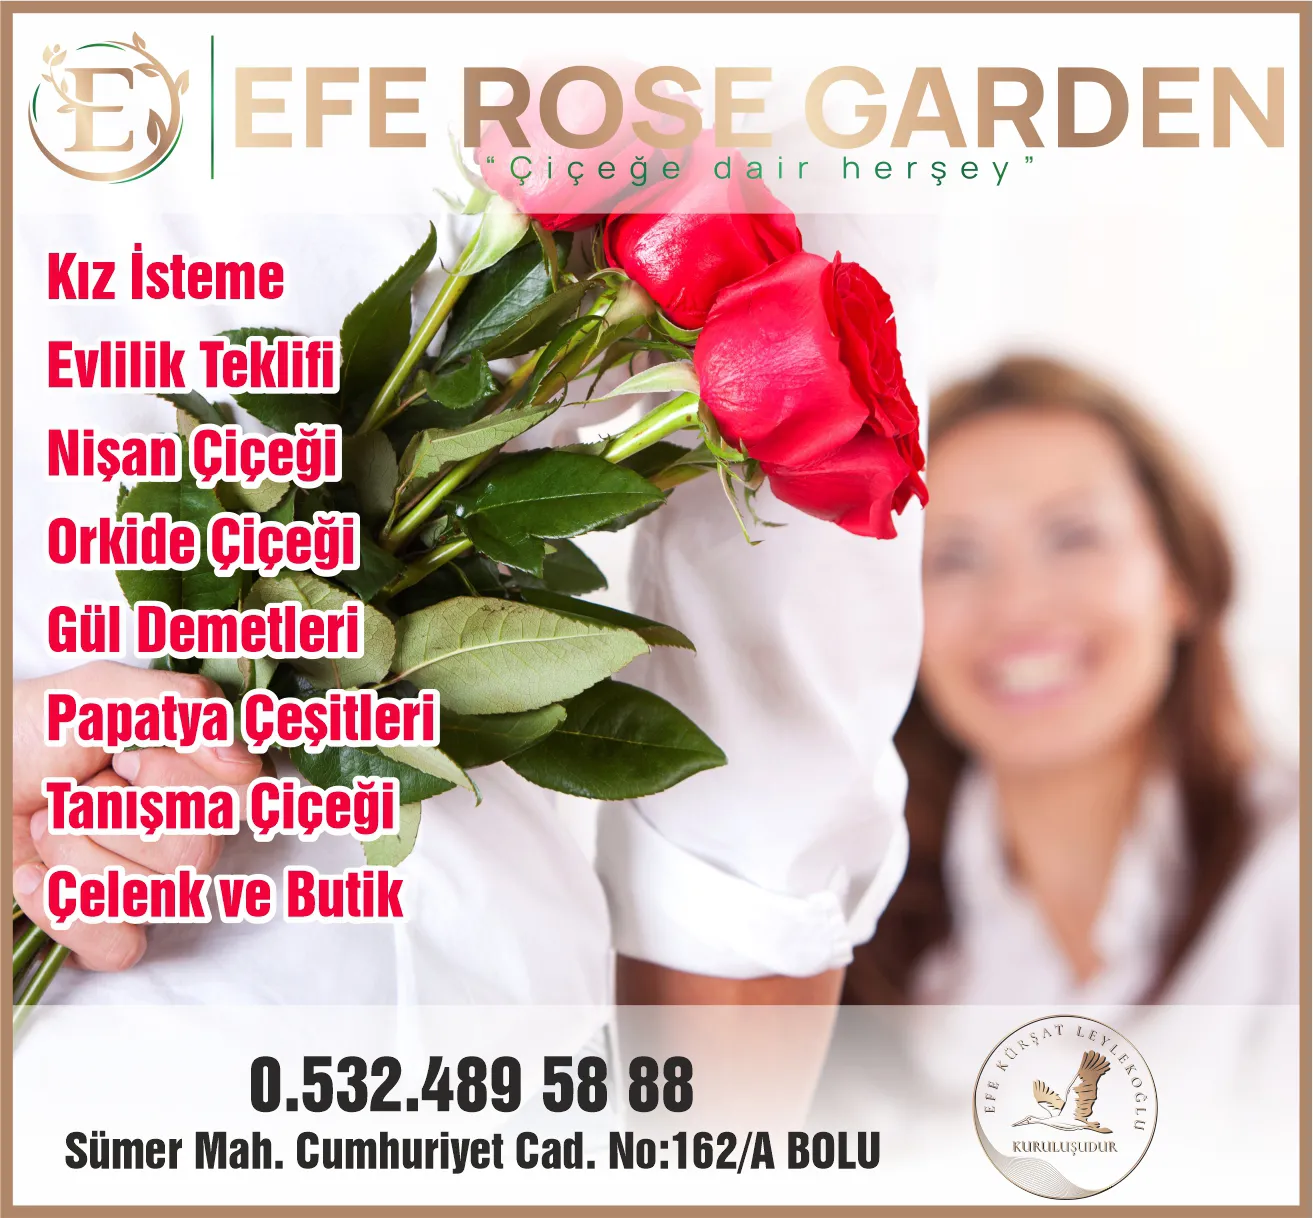 Efe Rose Garden Bolu çiçekci